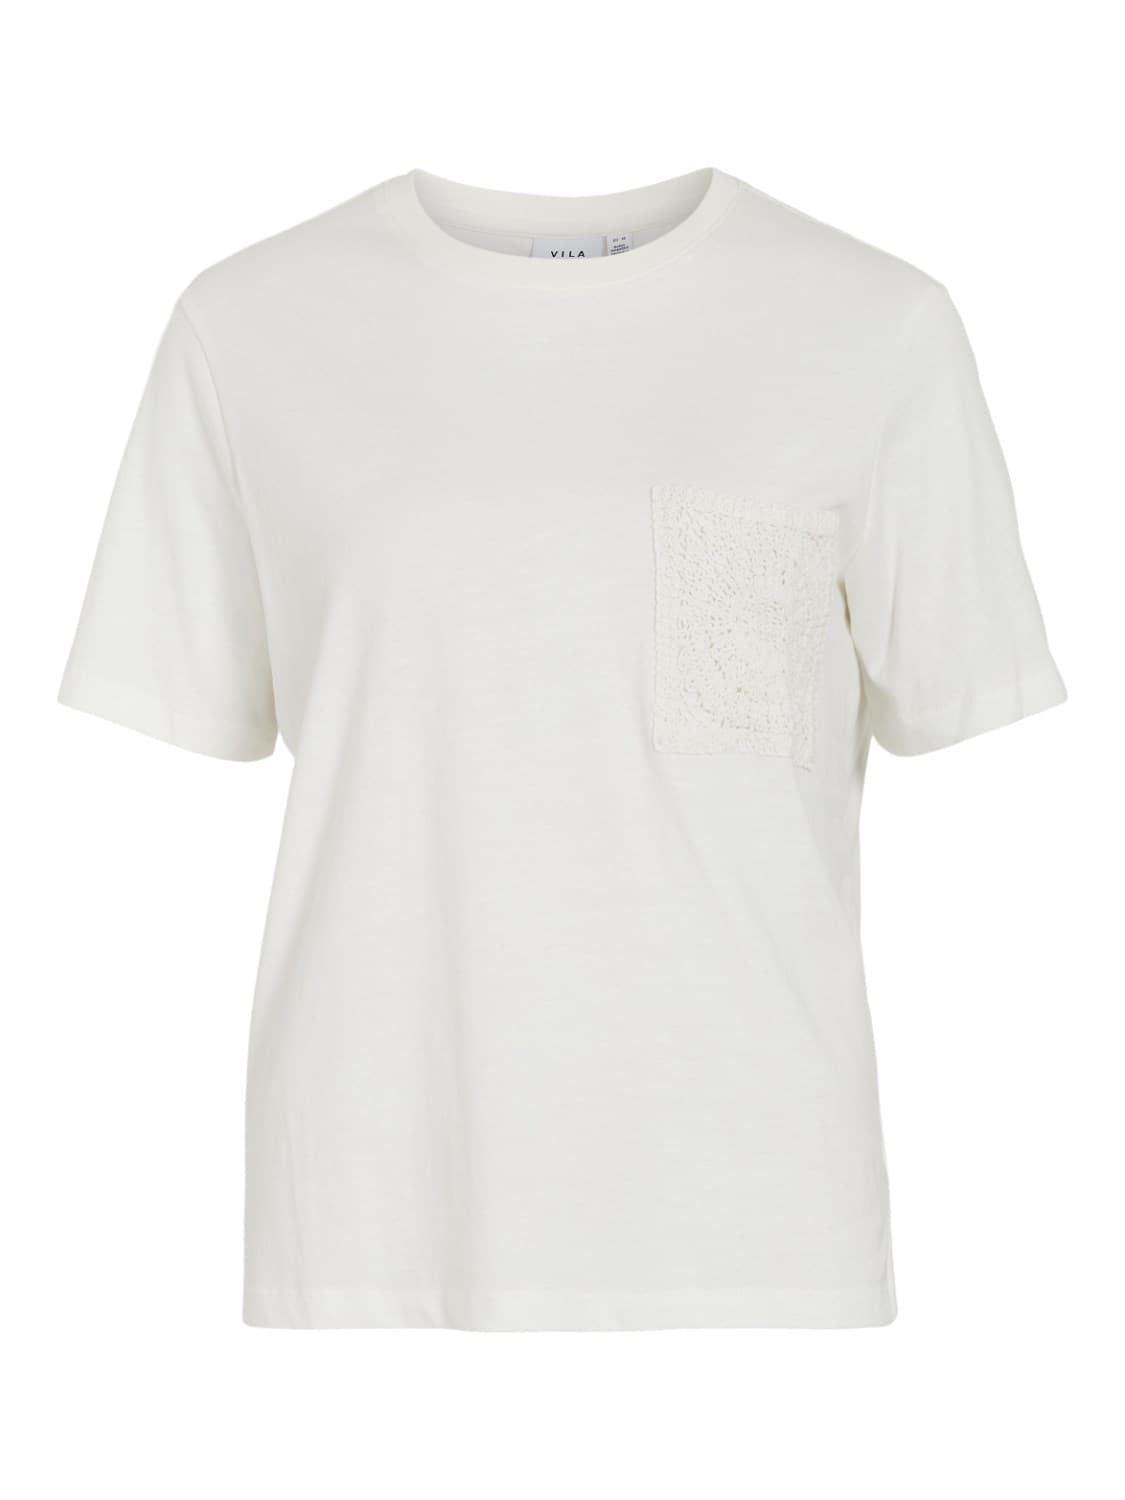 Camiseta crochet visybil egret - Imagen 5